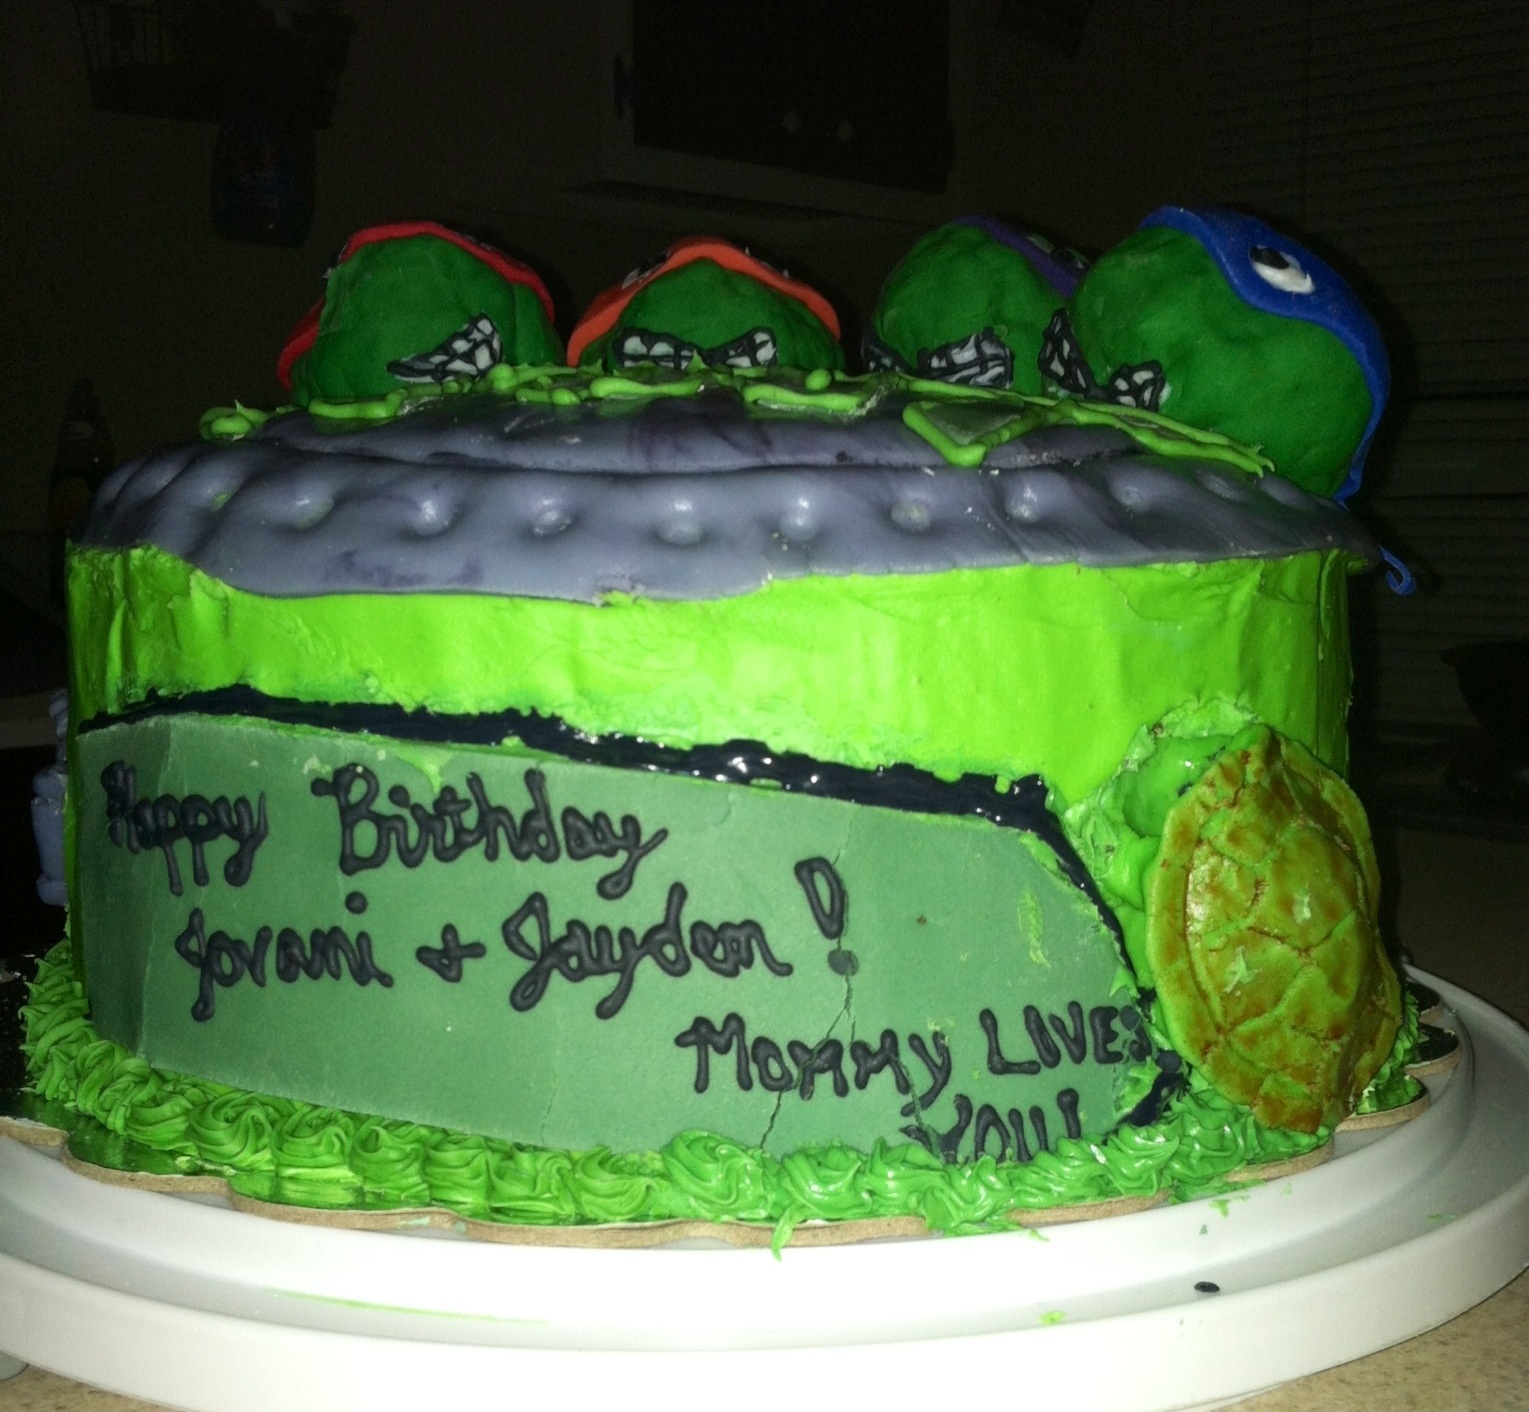 Mutant Ninja Turtles Cake